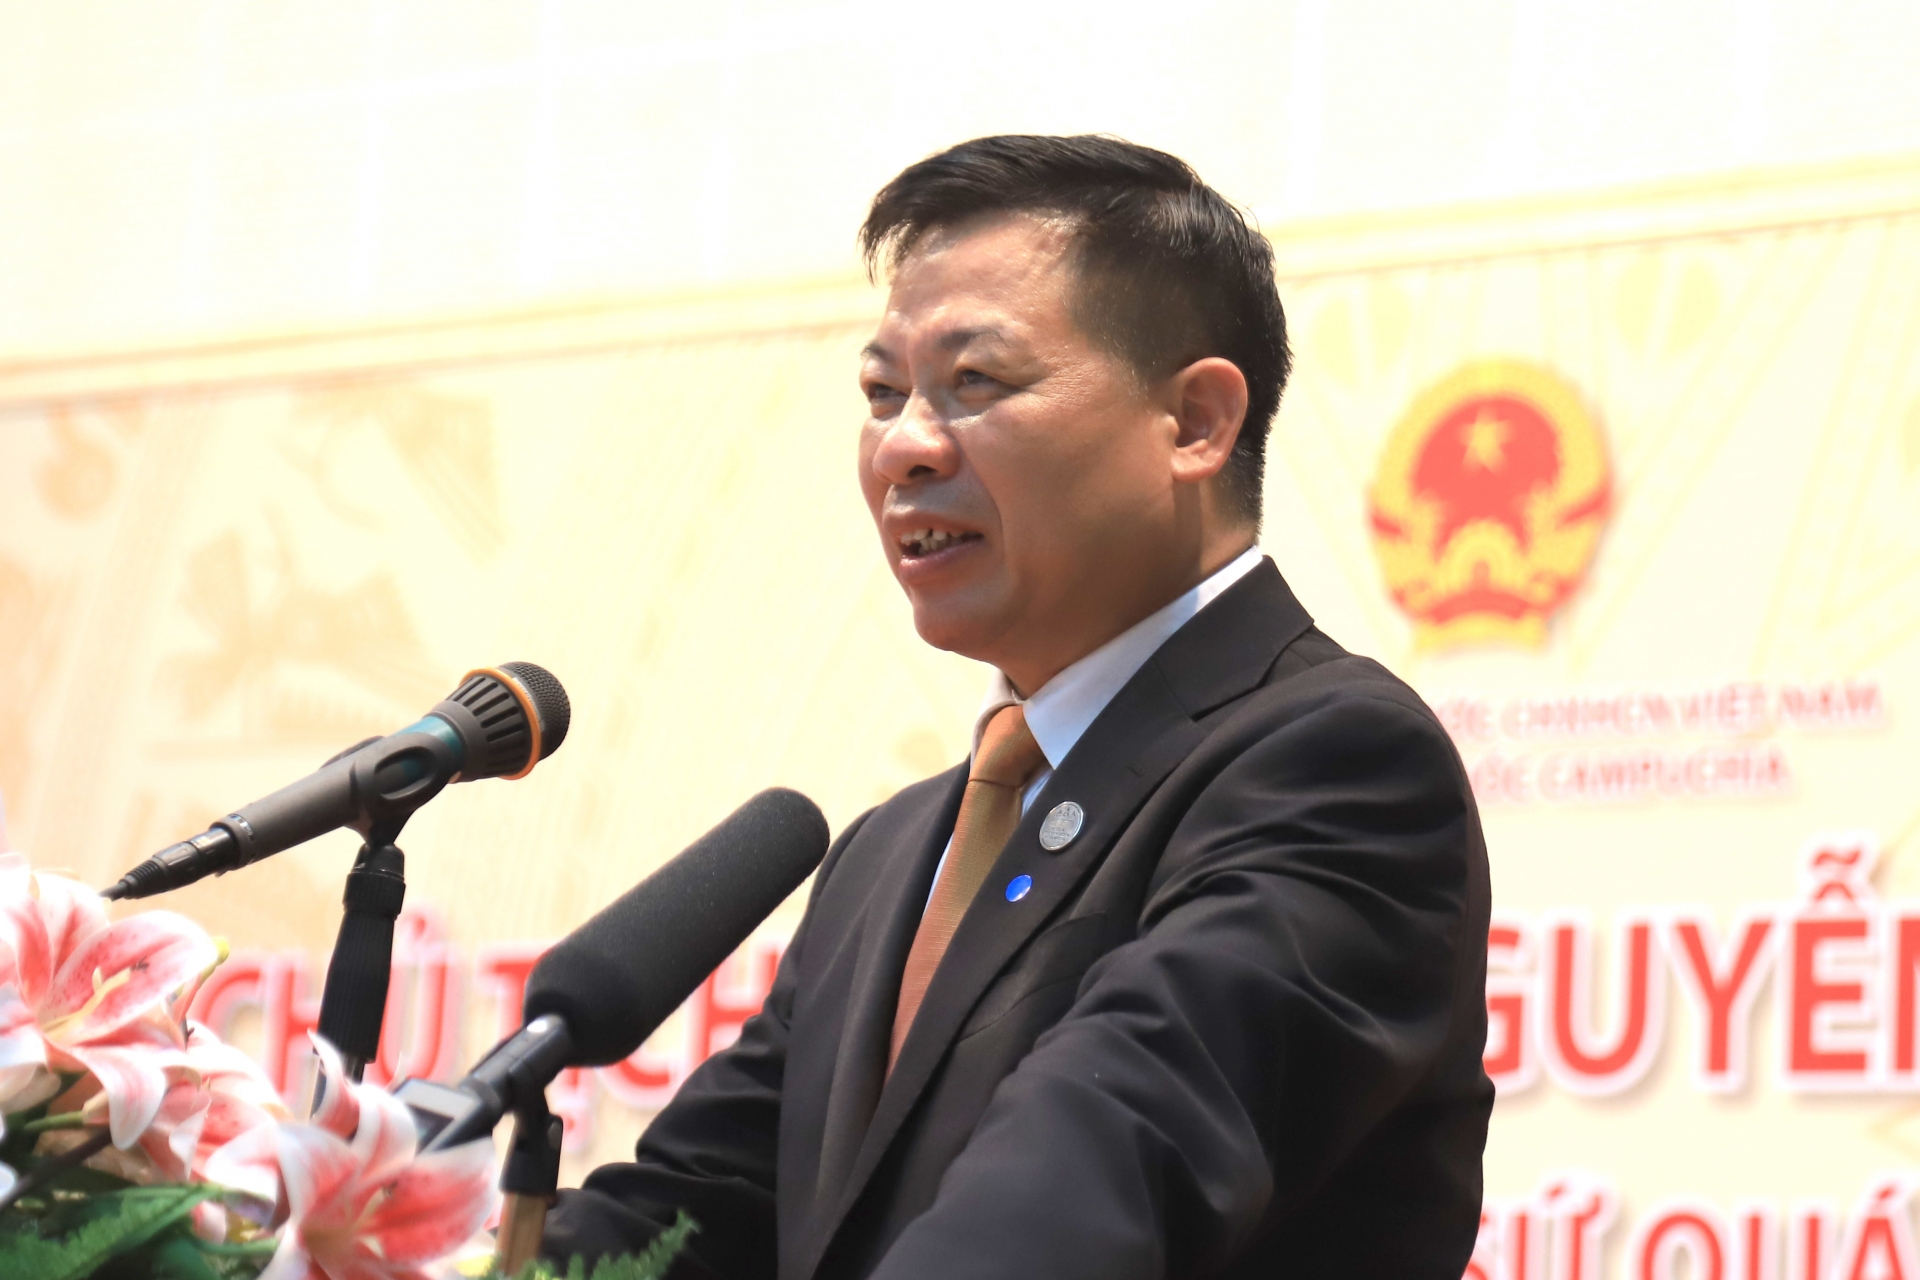 越南政府总理范明政会见离任前来拜会的柬埔寨驻越大使查伊